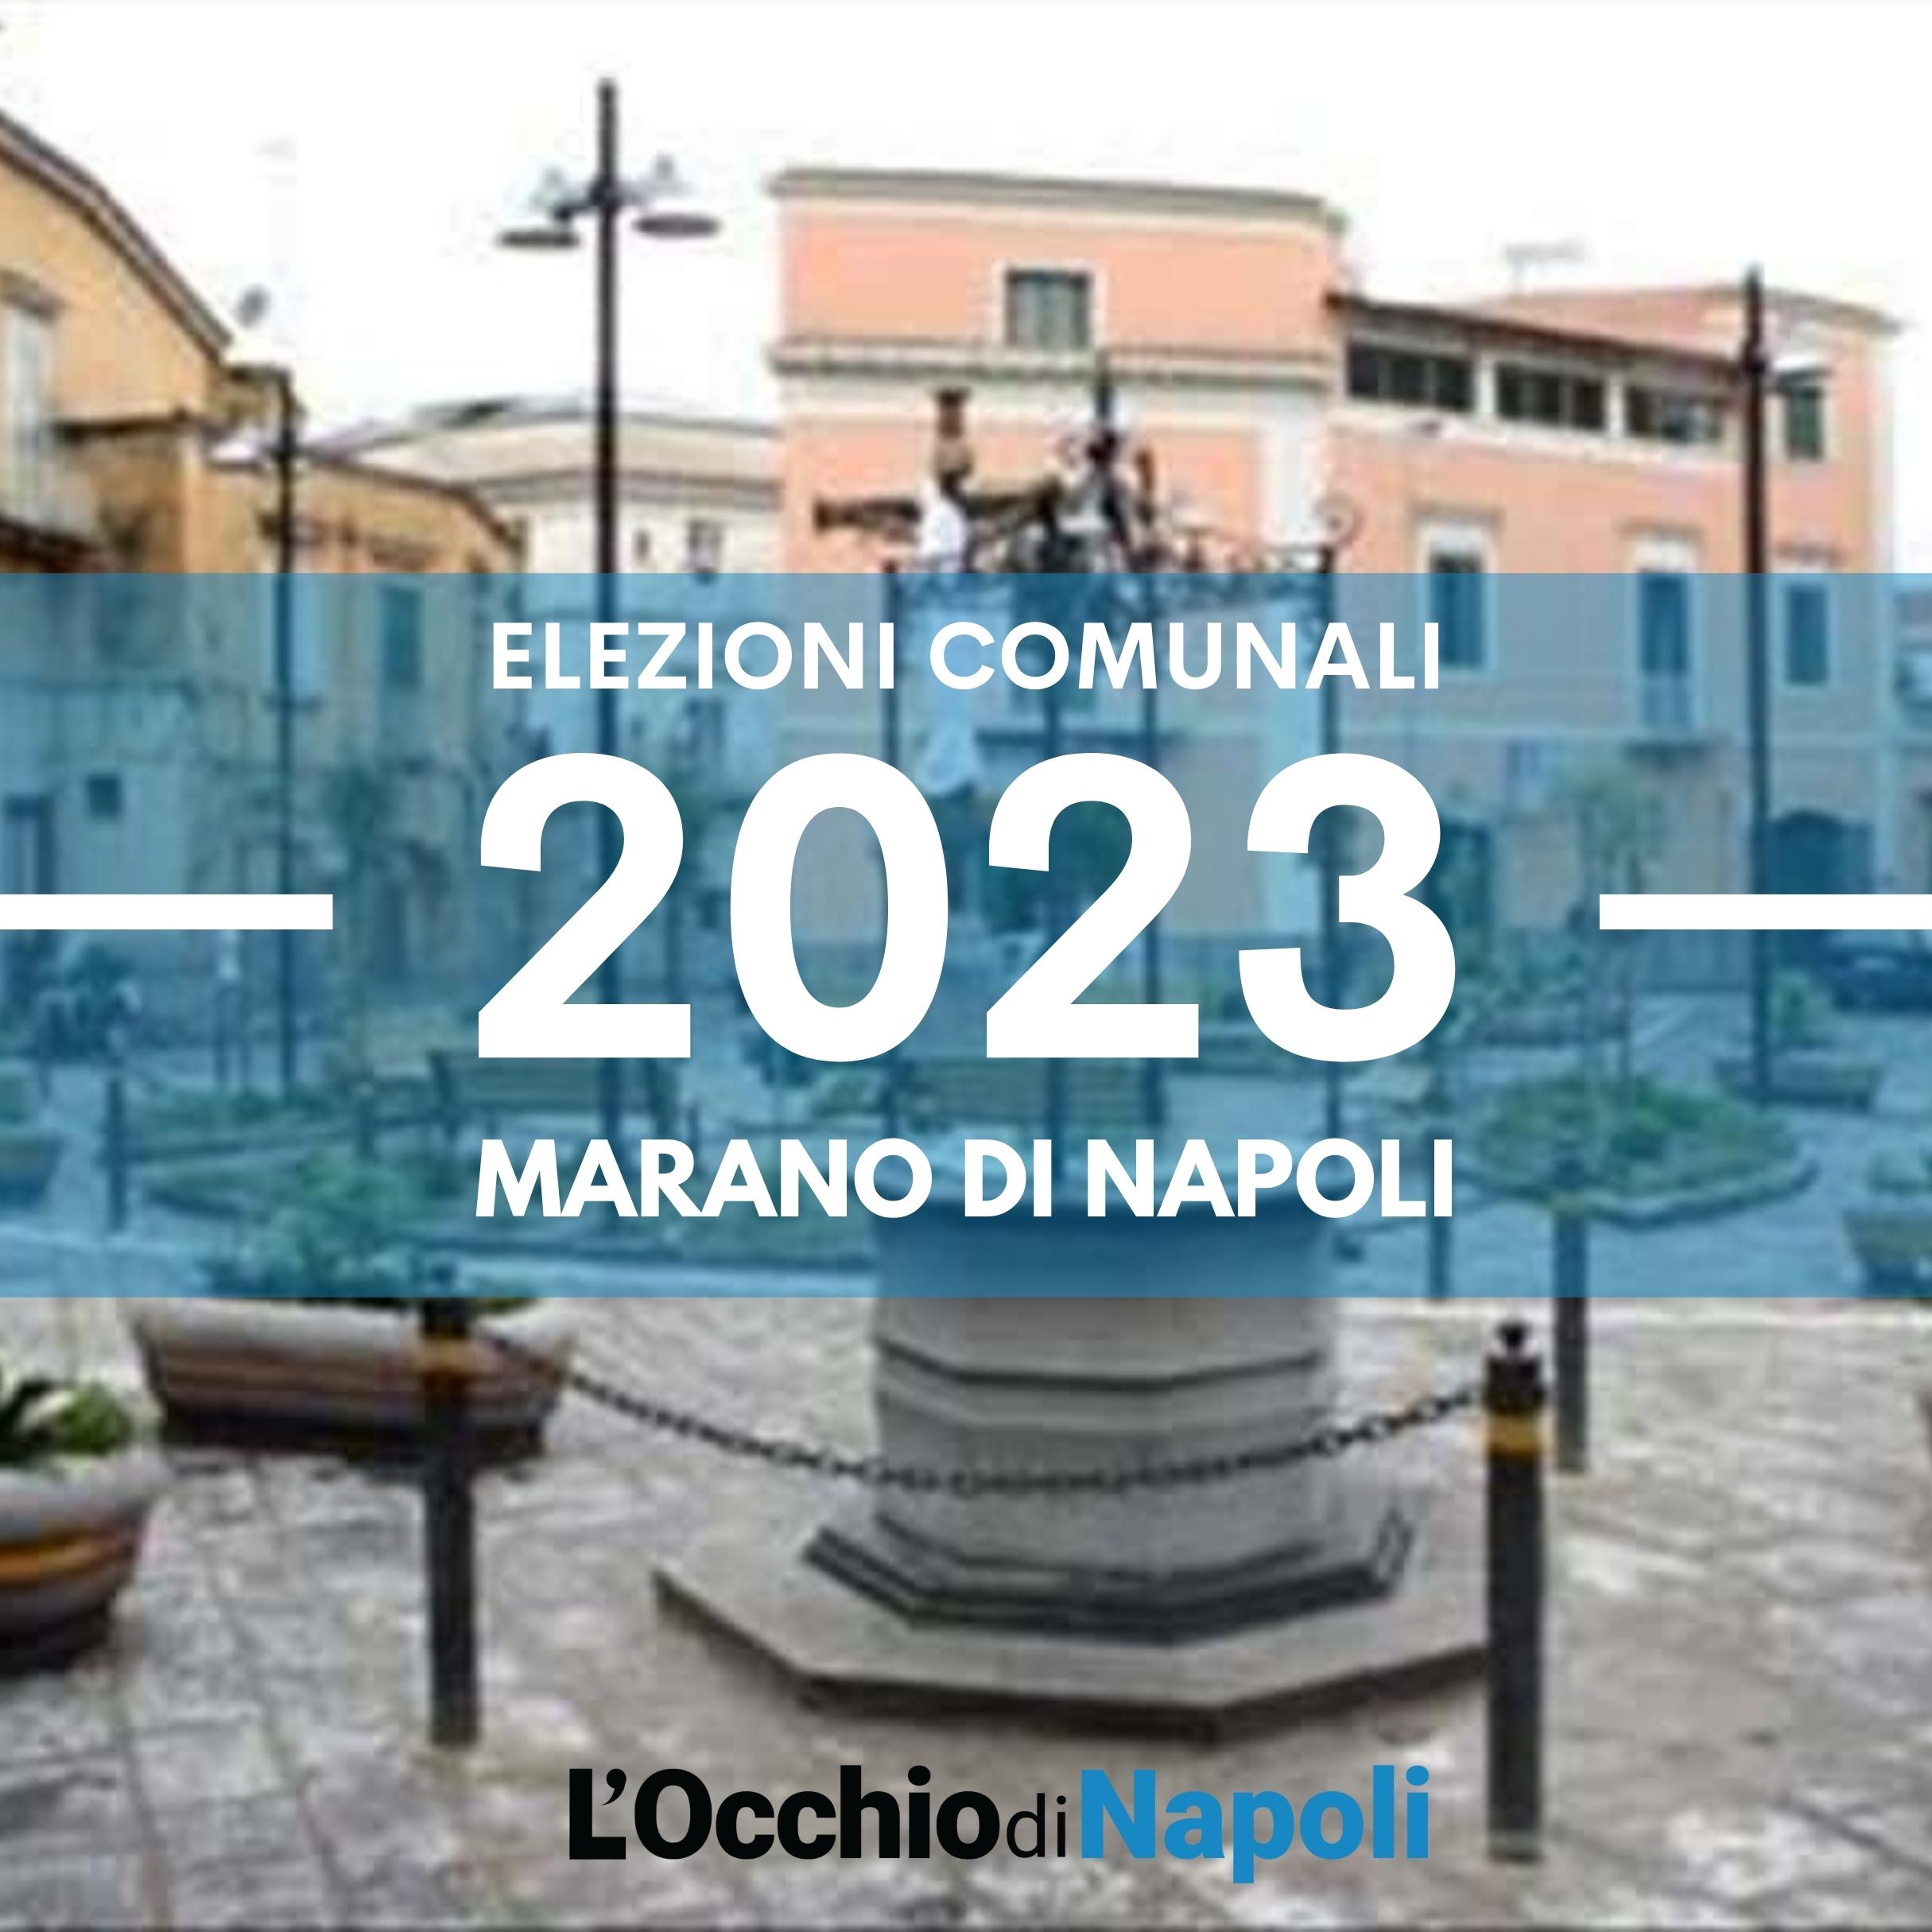 Elezioni comunali 2023 Marano di Napoli liste candidati